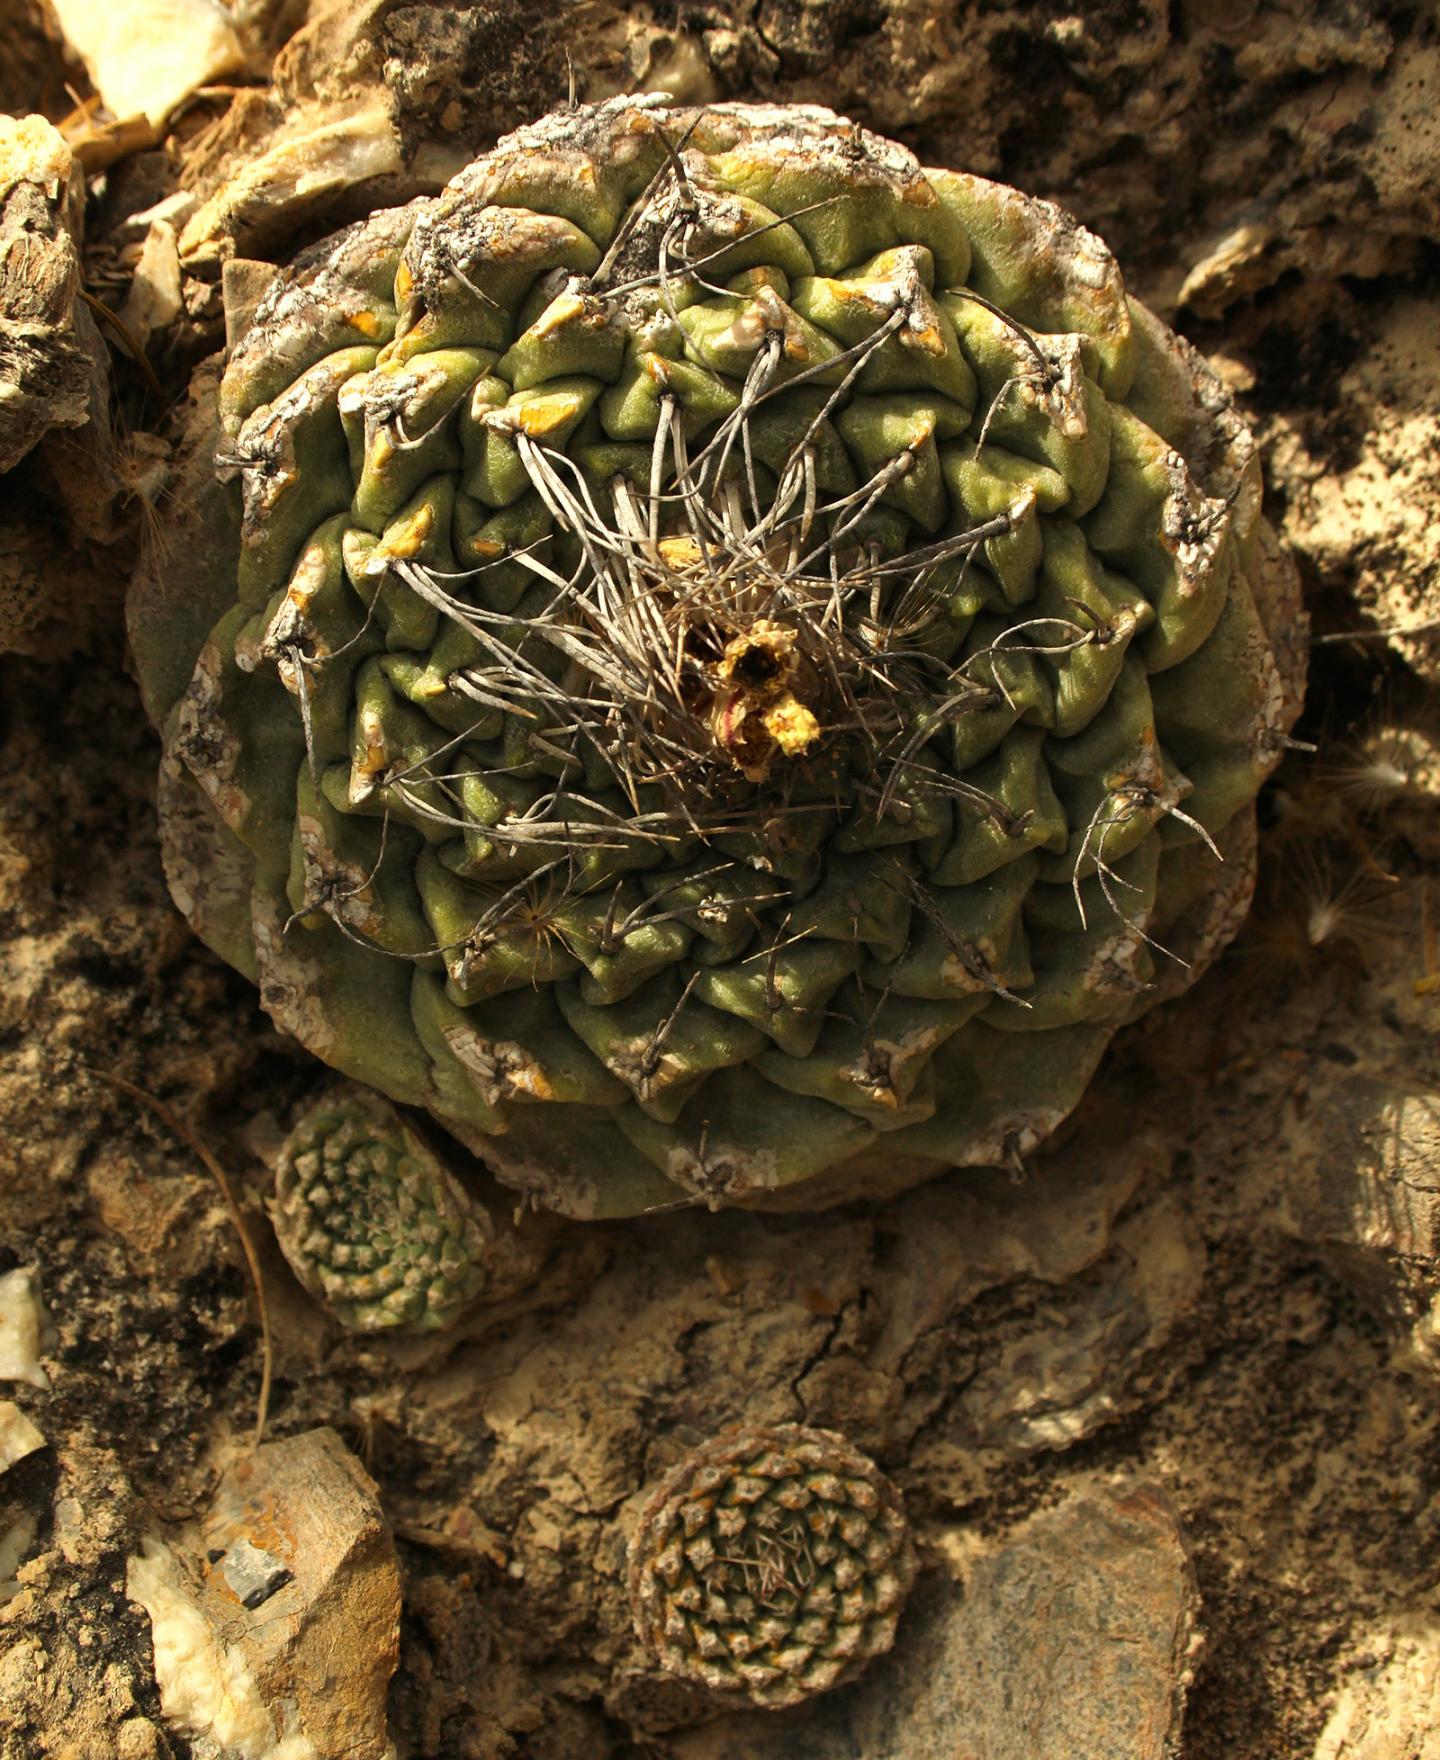 Disc Cactus in the Wild